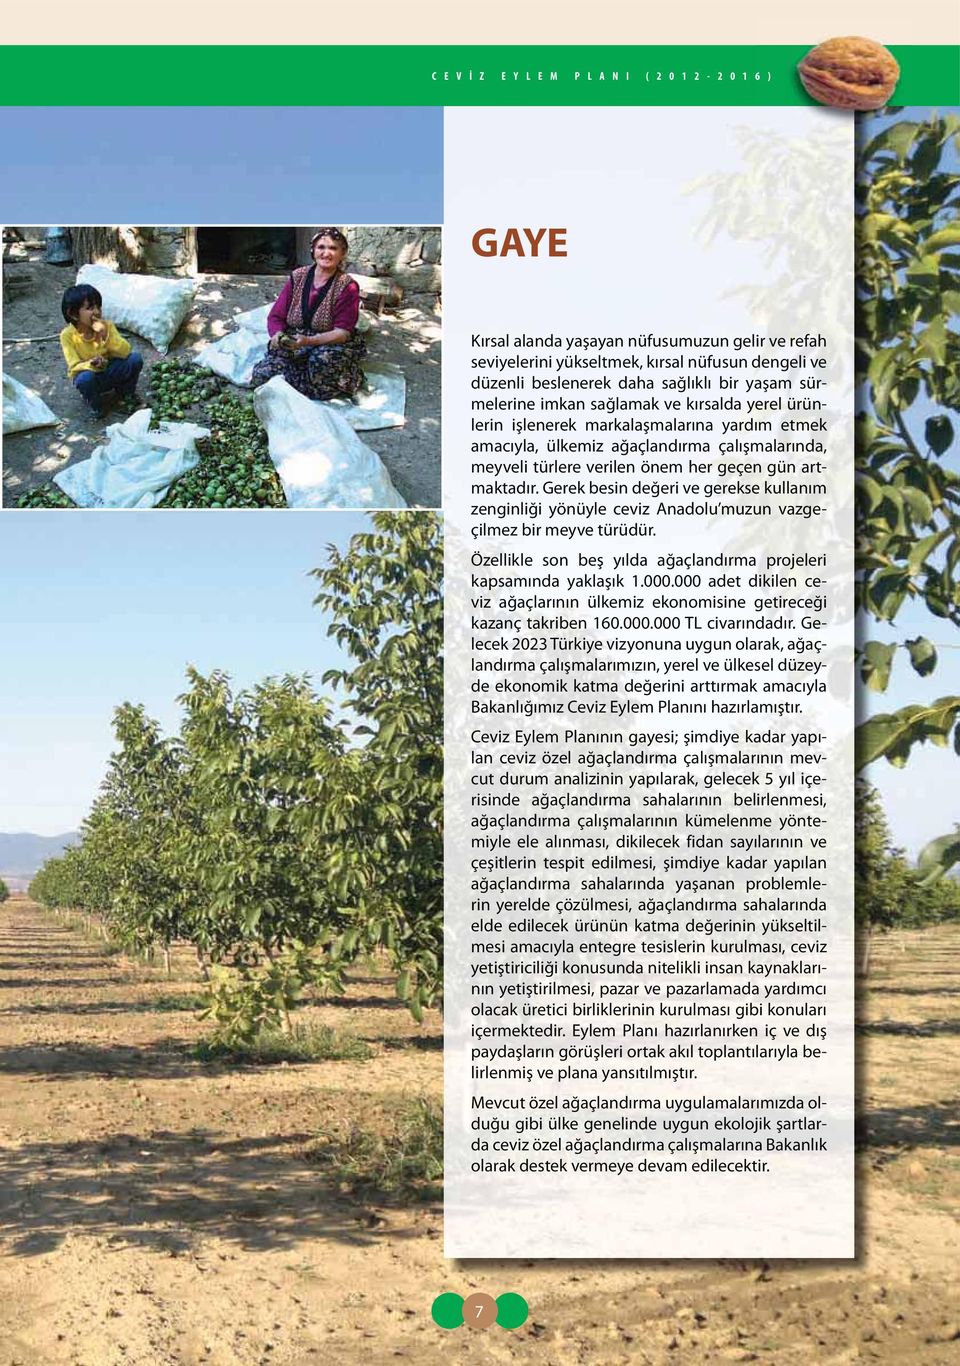 Gerek besin değeri ve gerekse kullanım zenginliği yönüyle ceviz Anadolu muzun vazgeçilmez bir meyve türüdür. Özellikle son beş yılda ağaçlandırma projeleri kapsamında yaklaşık 1.000.